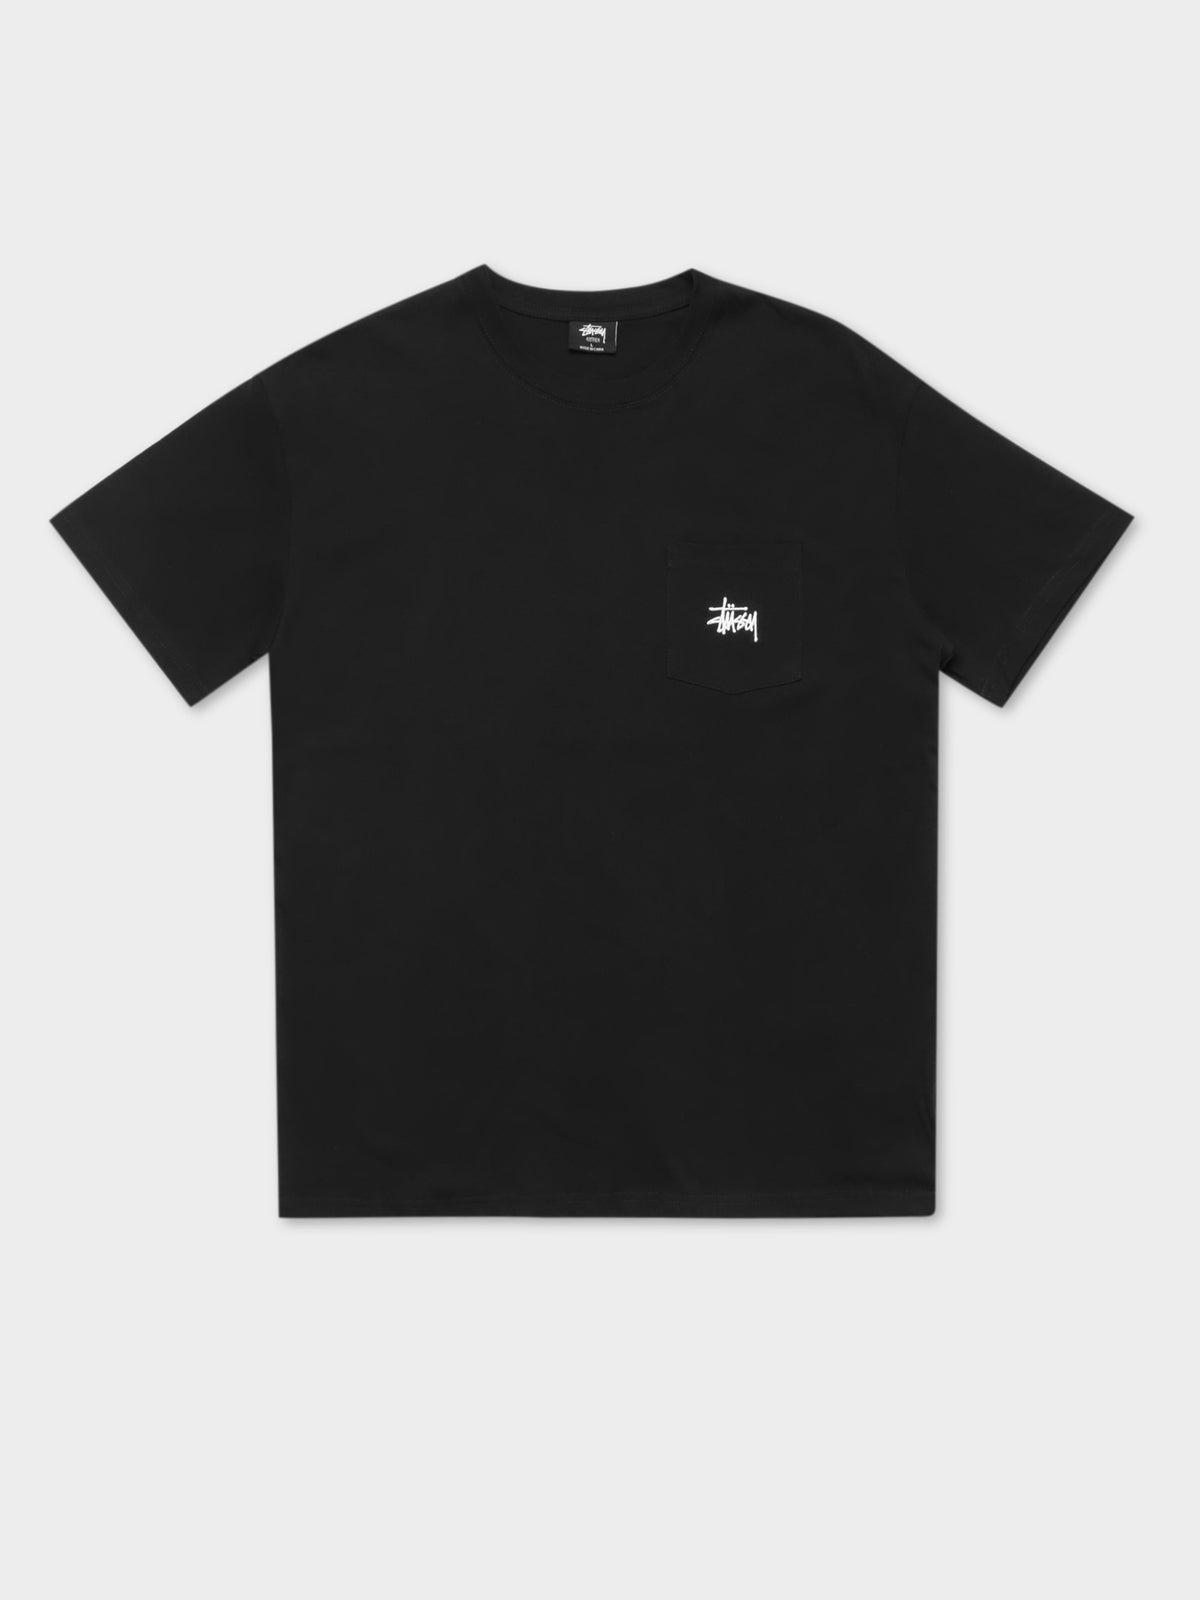 Graffiti Short Sleeve Pocket T-Shirt in Black